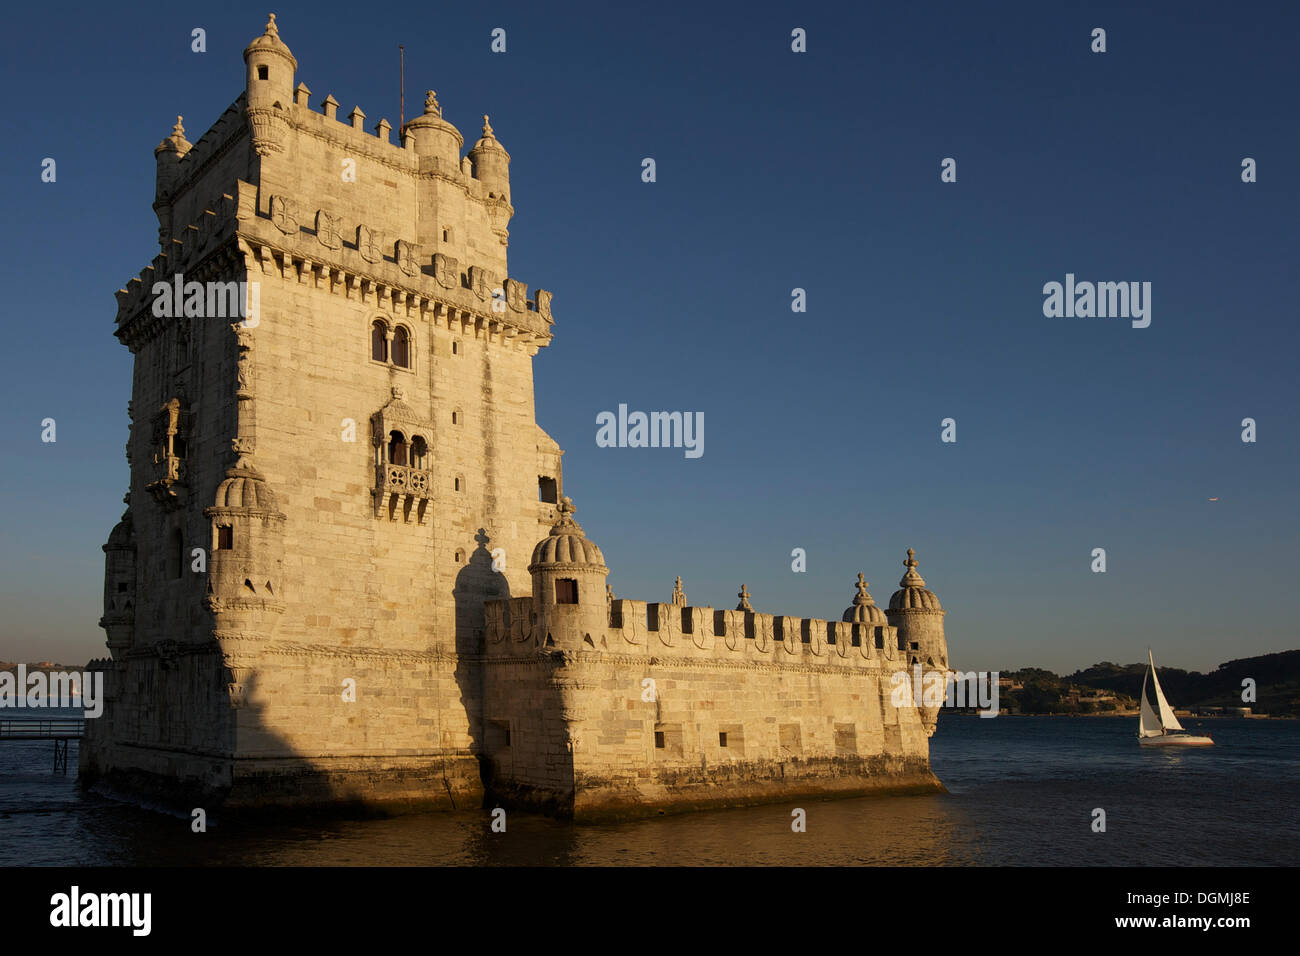 Torre de Belem, Belem tower, UNESCO World Heritage Site, Belem quarter, Lisbon, Portugal, Europe Stock Photo